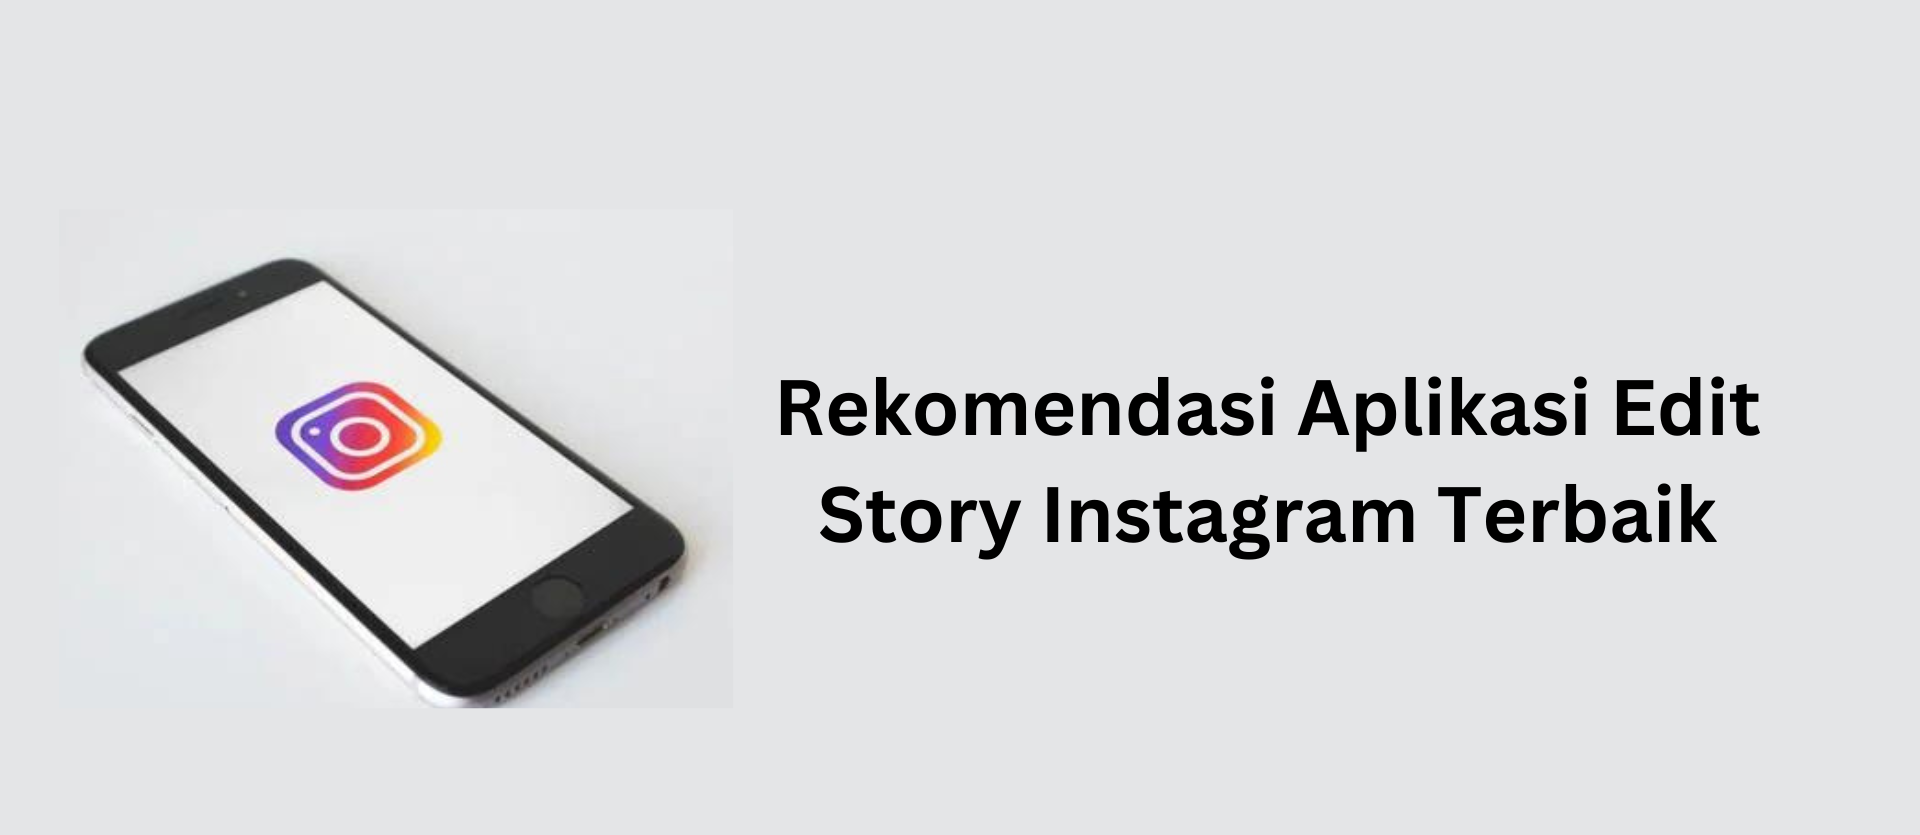 Rekomendasi Aplikasi Edit Story Instagram Terbaik